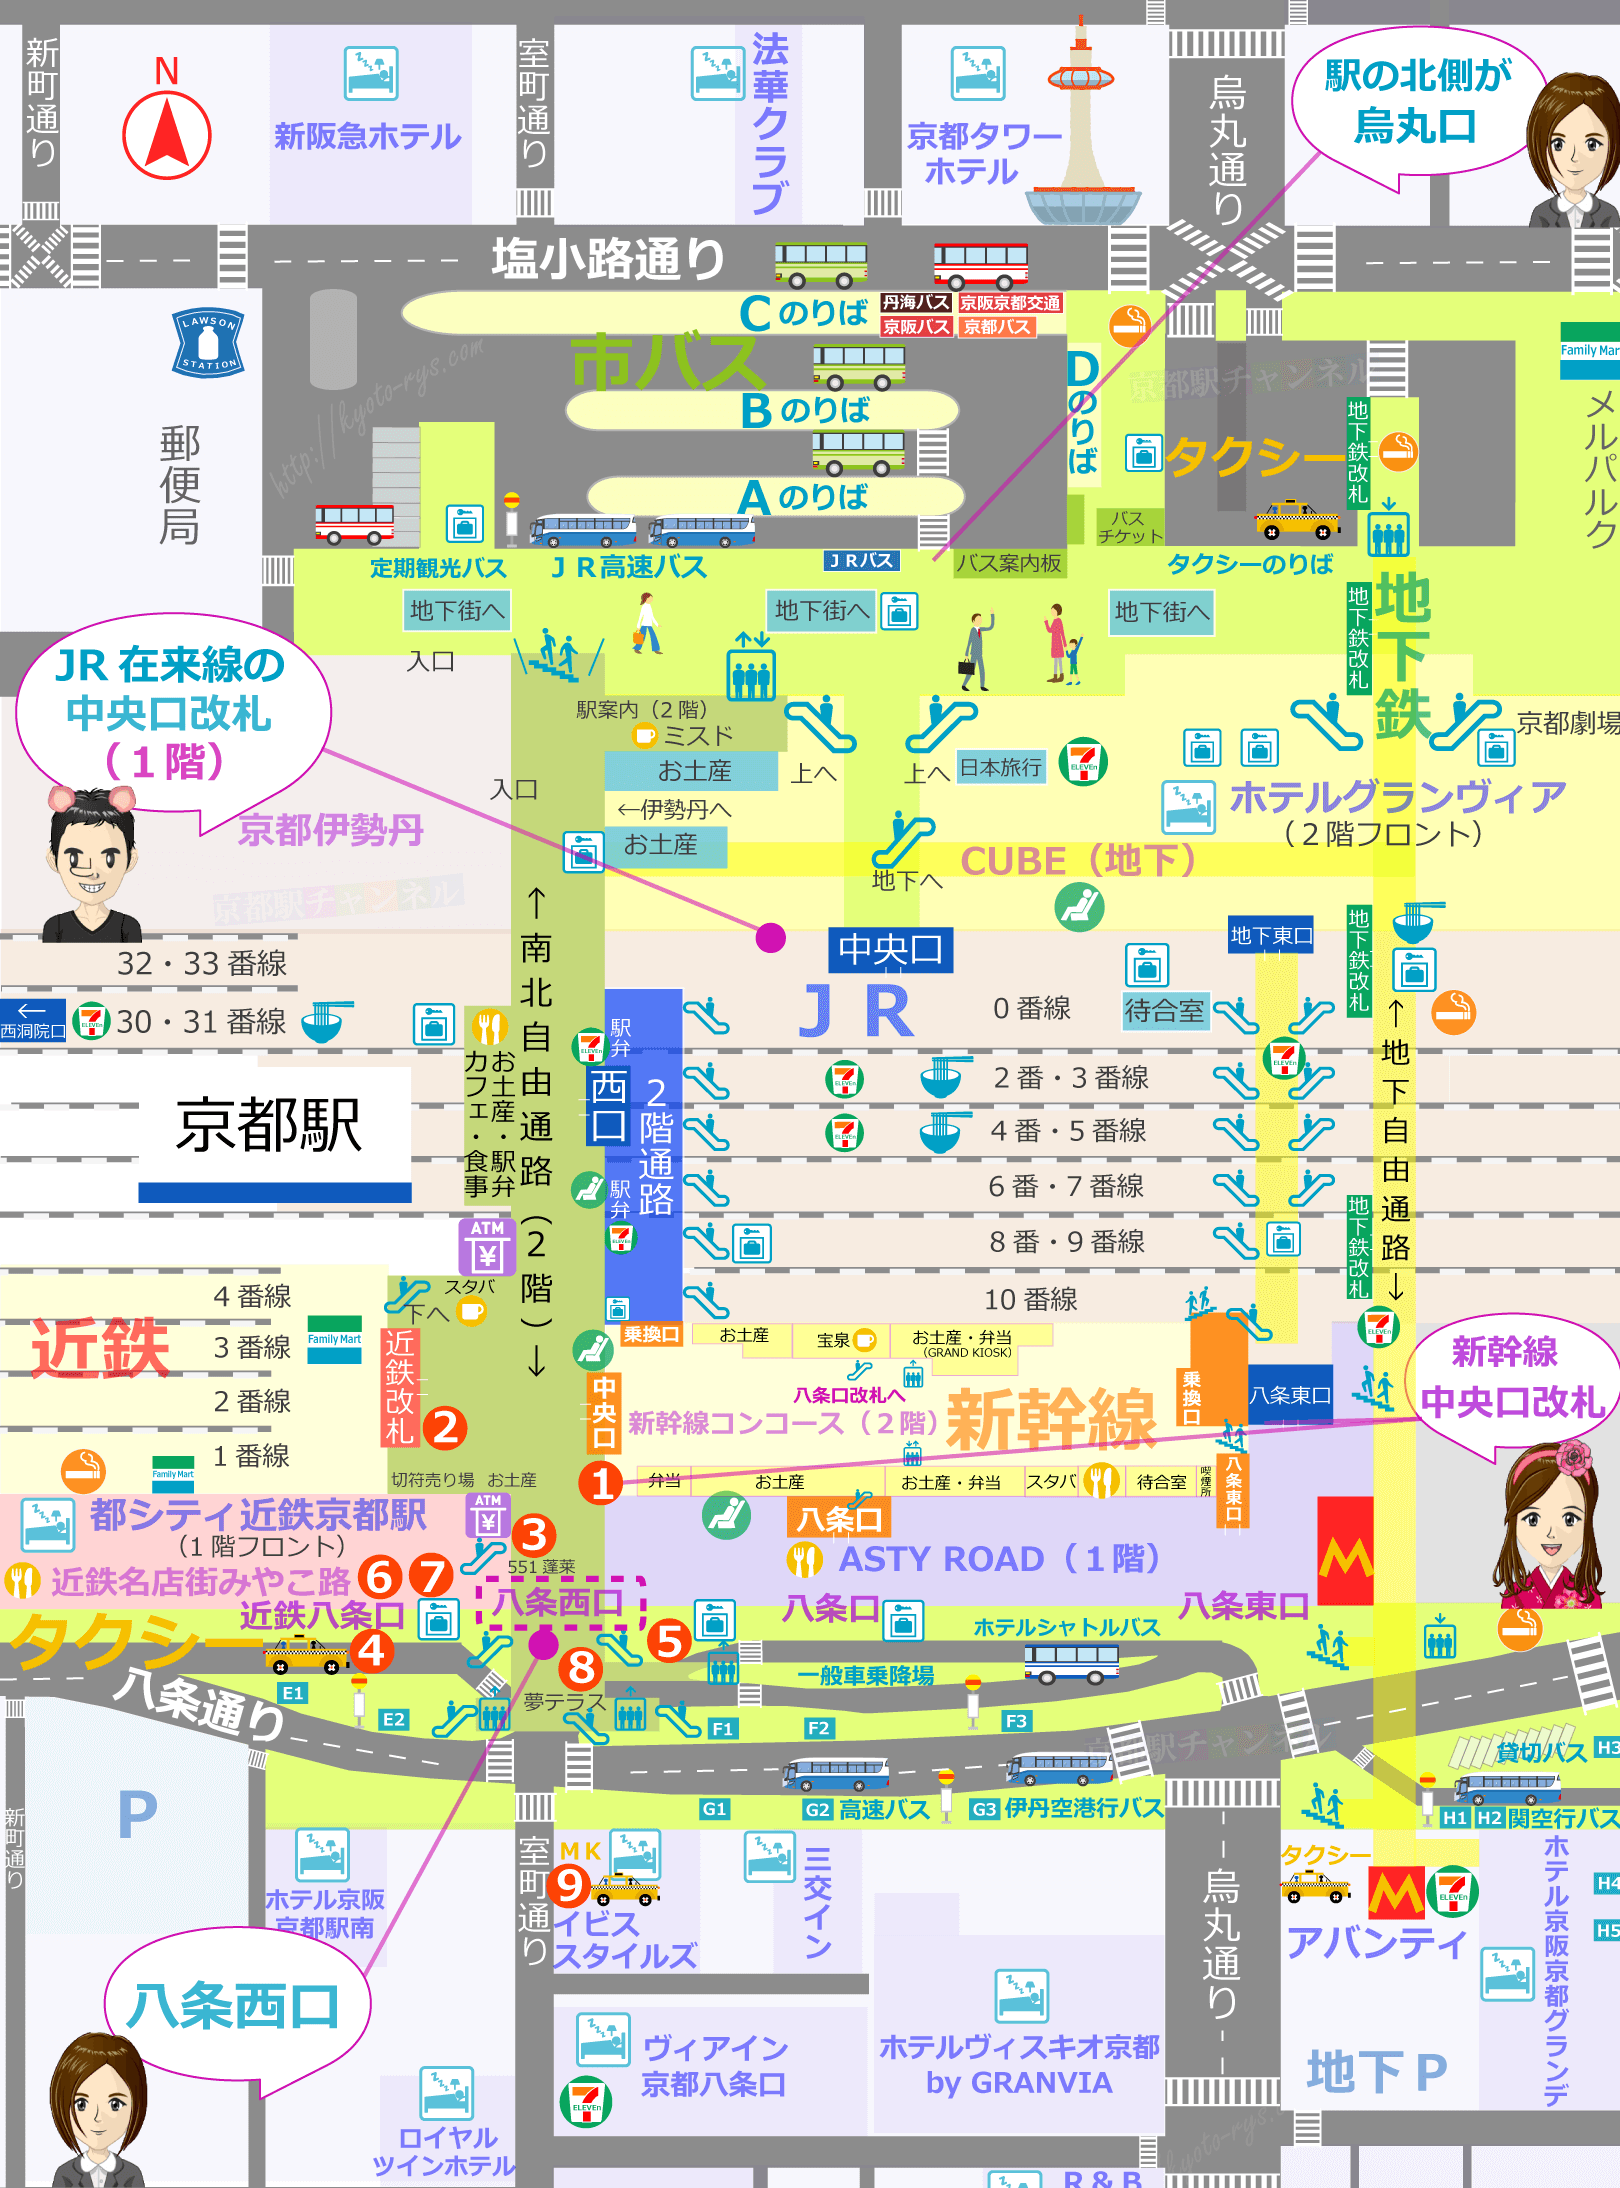 京都駅の構内図と八条西口のマップ